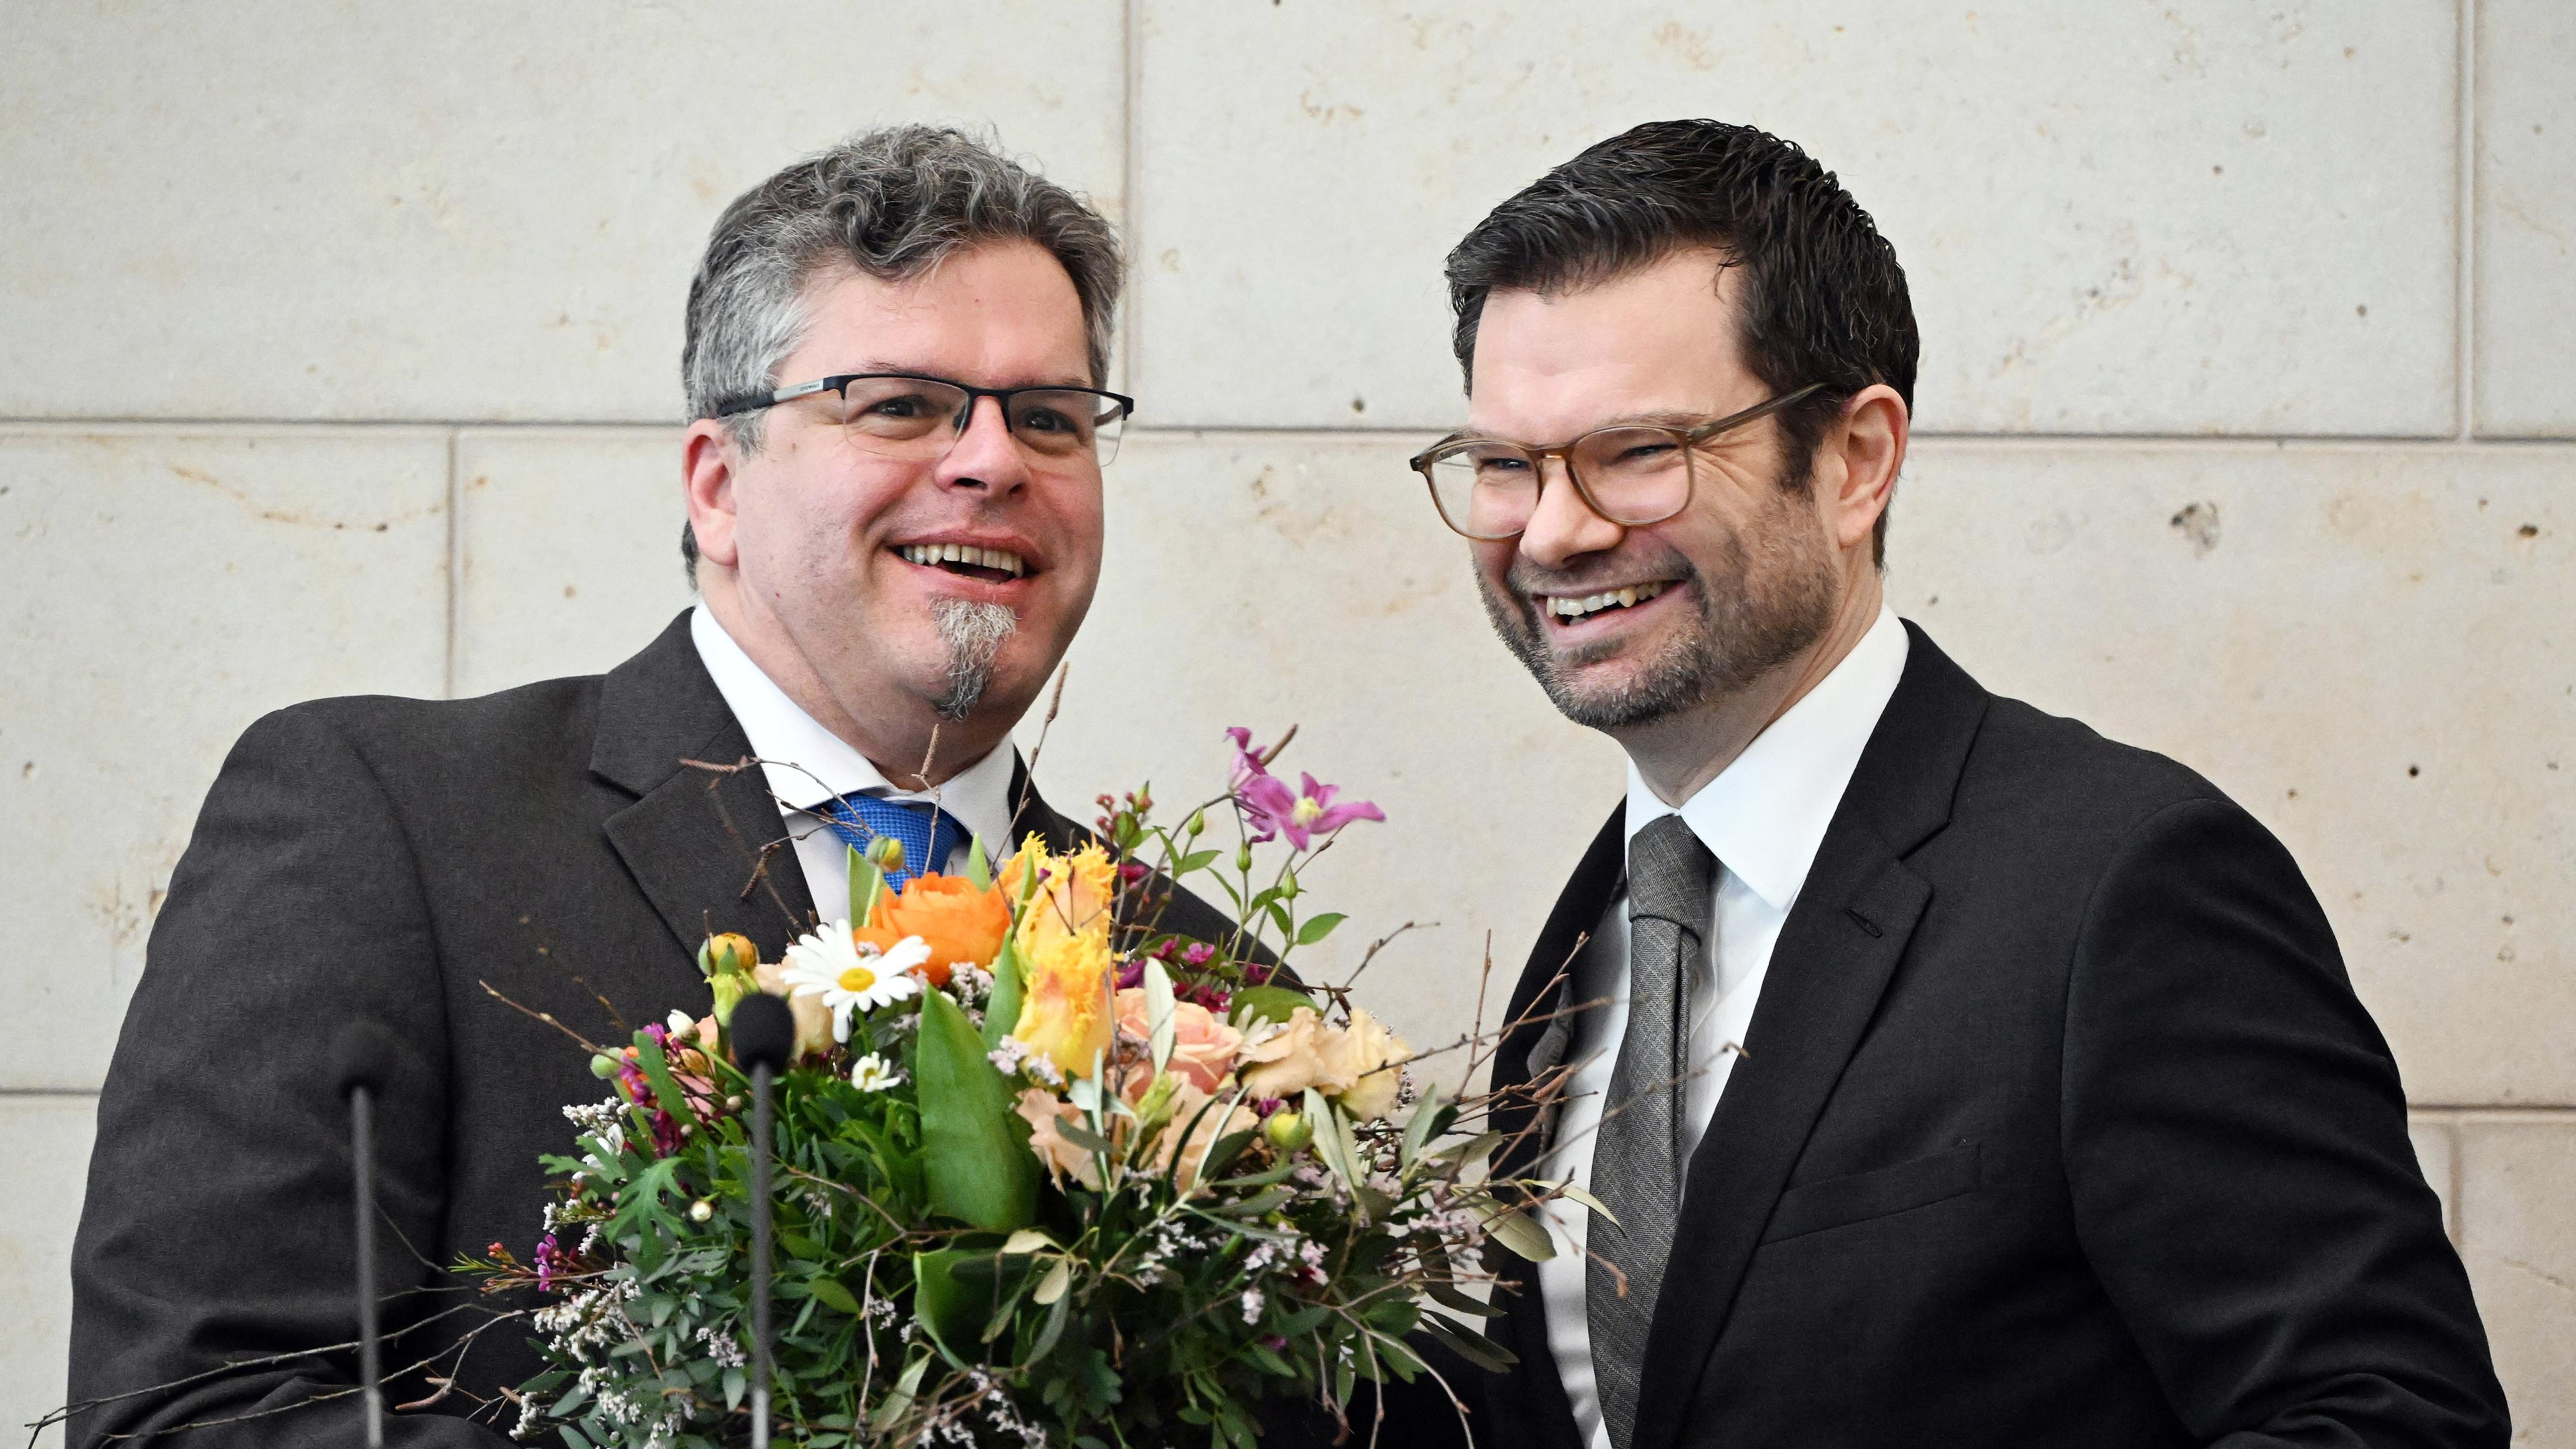 Bundesjustizminister Marco Buschmann überreicht dem neuen Generalbundesanwalt Jens Rommel bei dessen offizieller Amtseinführung einen Blumenstraß